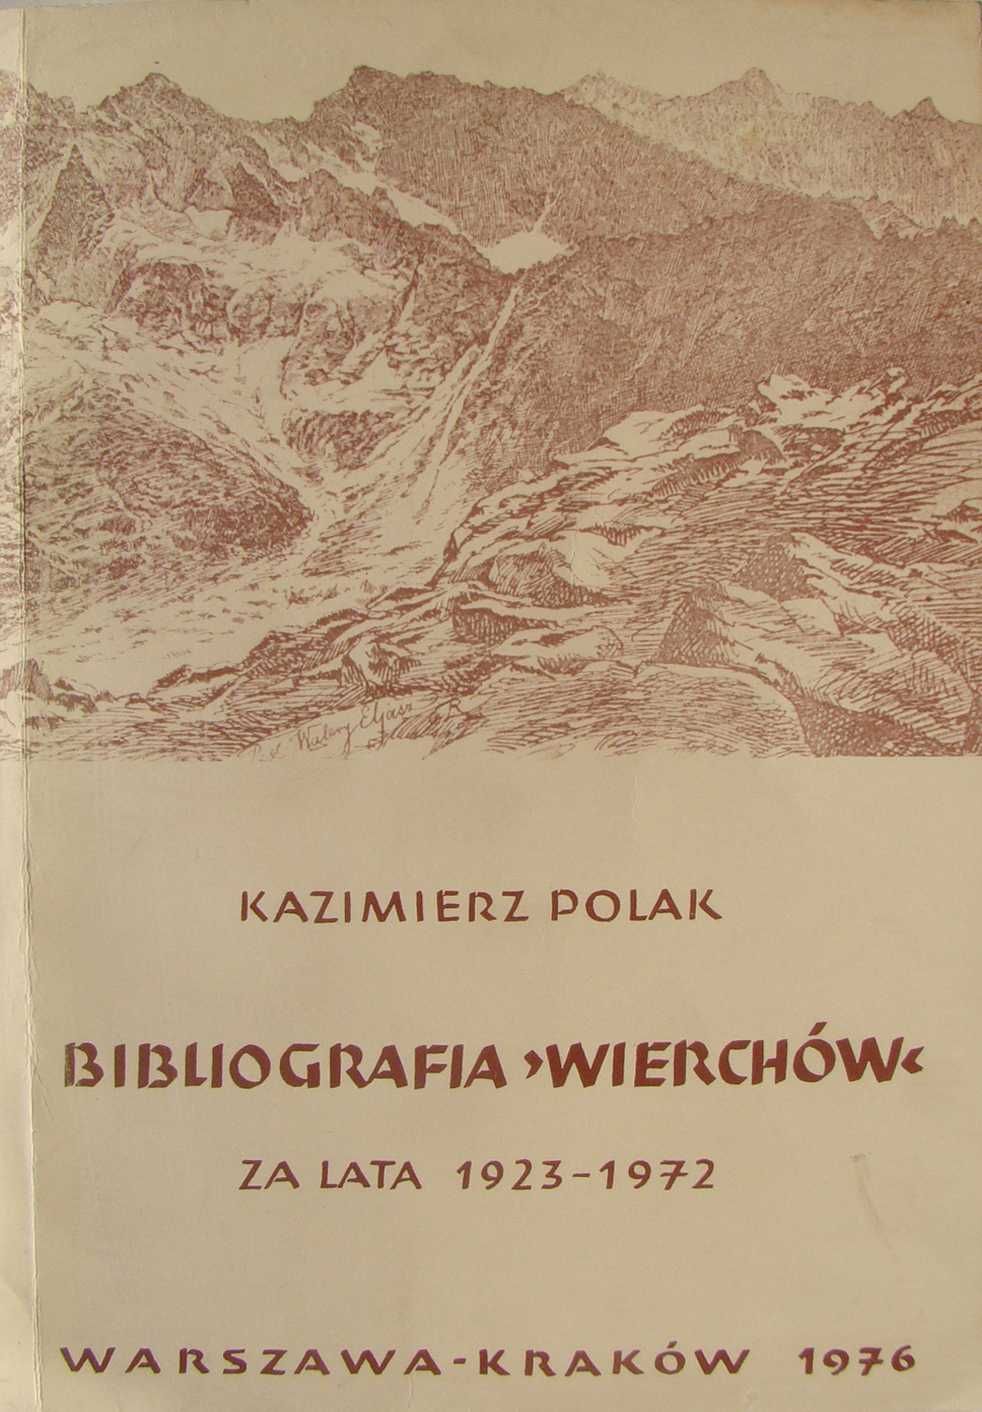 Bibliografia "Wierchów" za lata 1923 do 1972